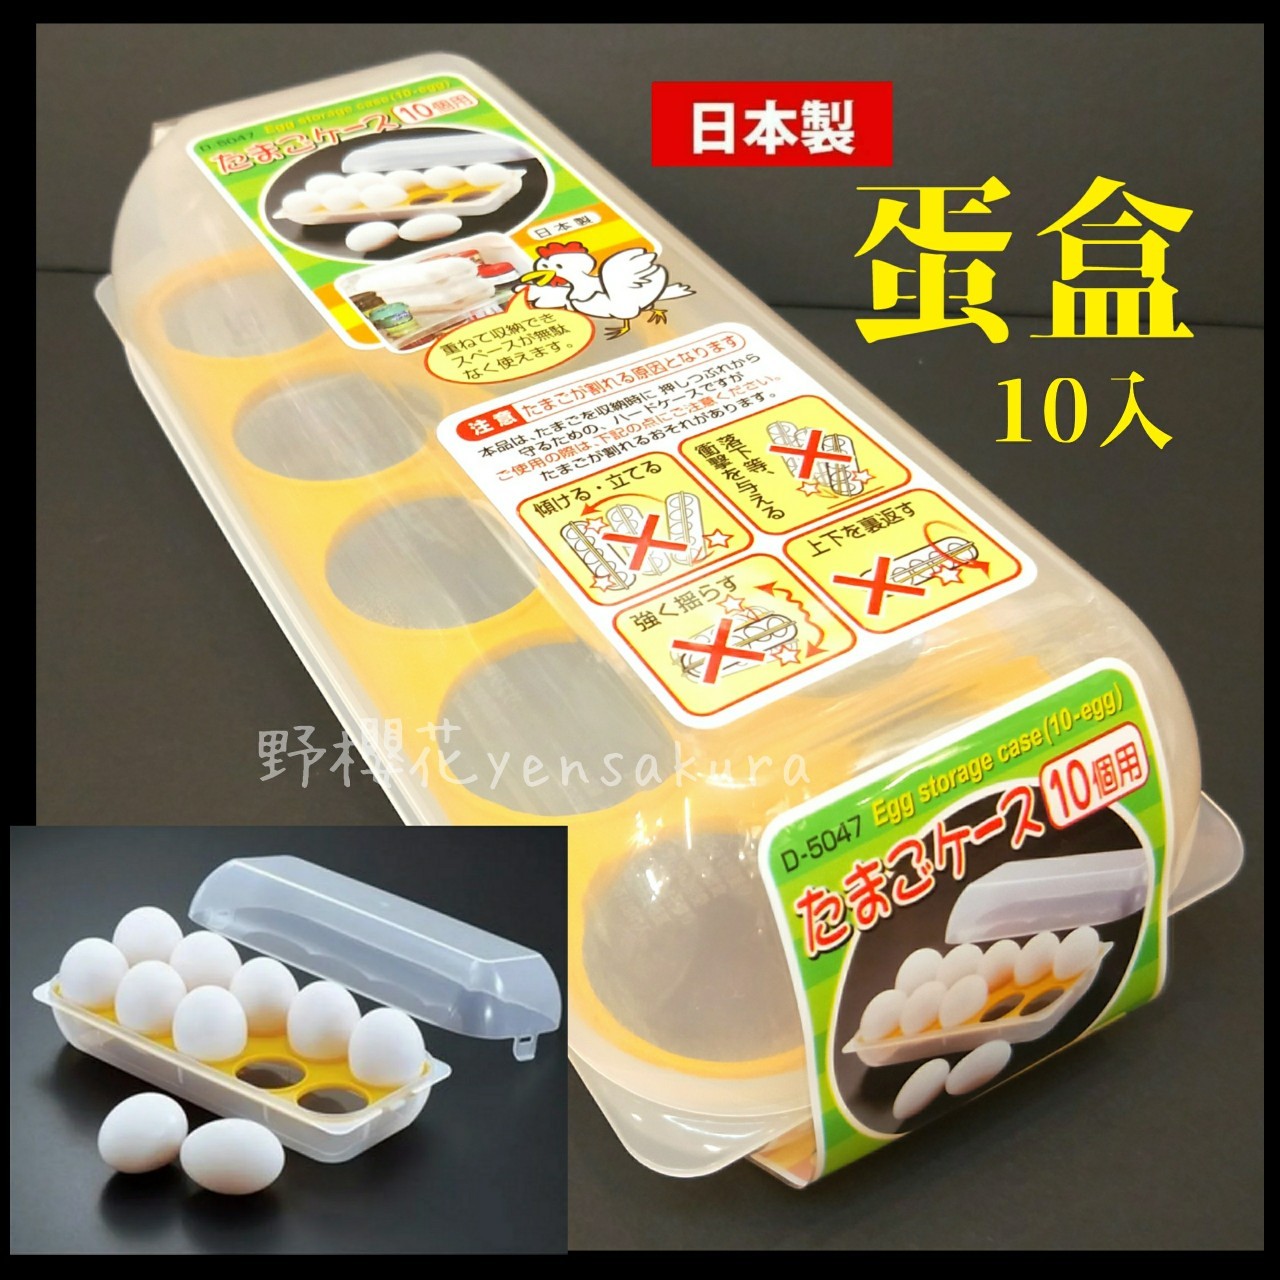 SANADA日本製10入家庭廚房用品露營蛋收納盒/雞蛋保鮮盒4973430018012[野櫻花]